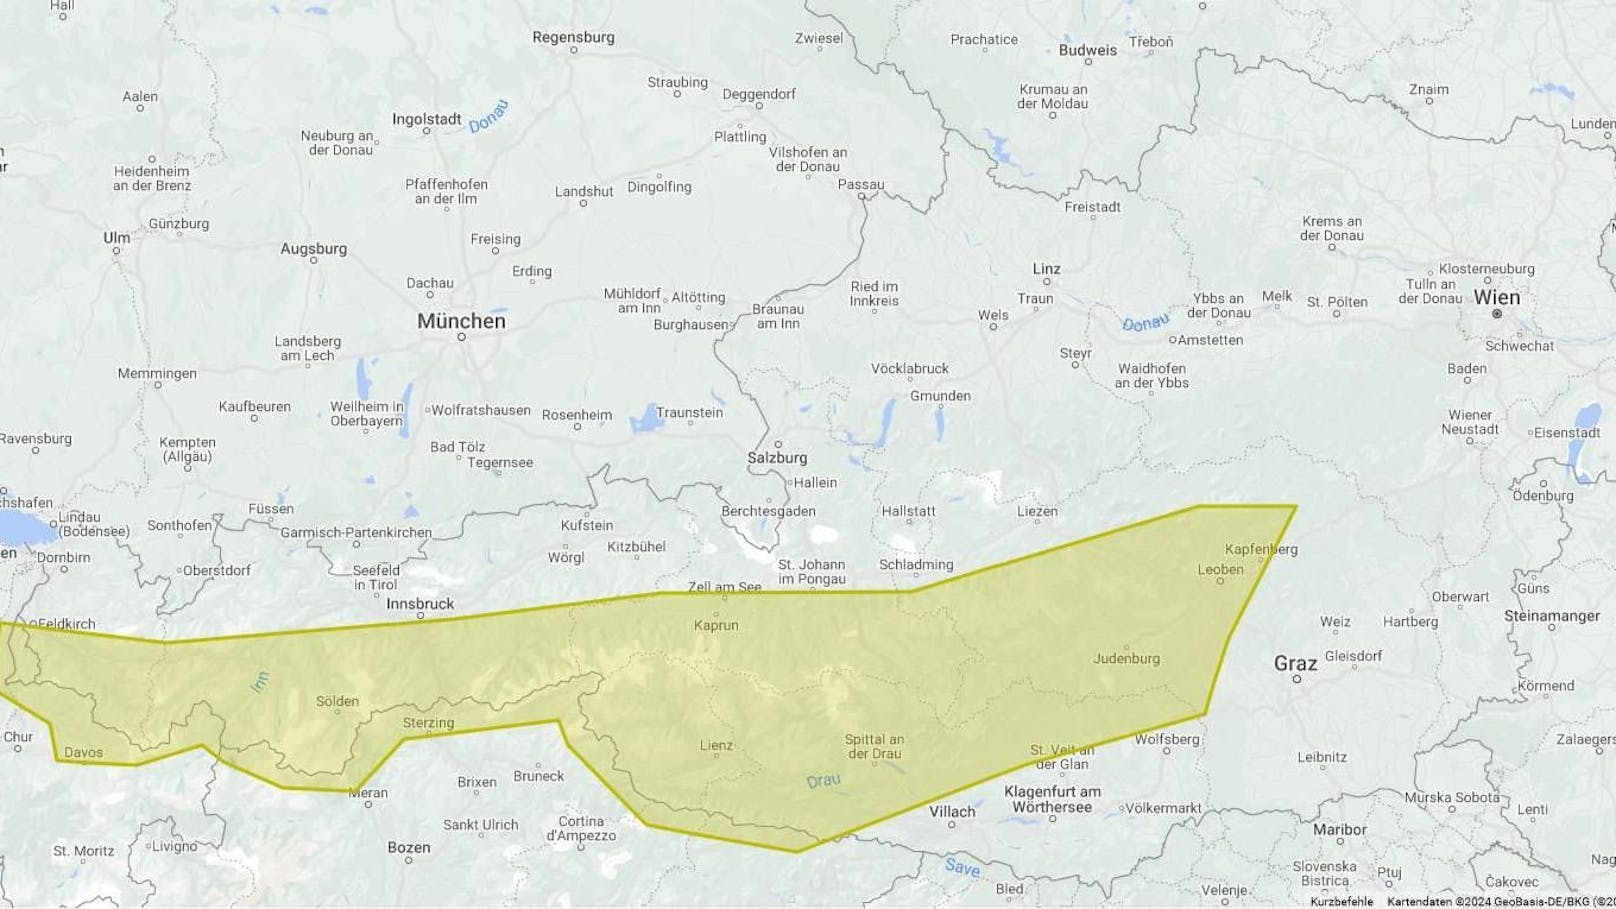 Gewitter-Karte zeigt, wo es in Österreich jetzt kracht